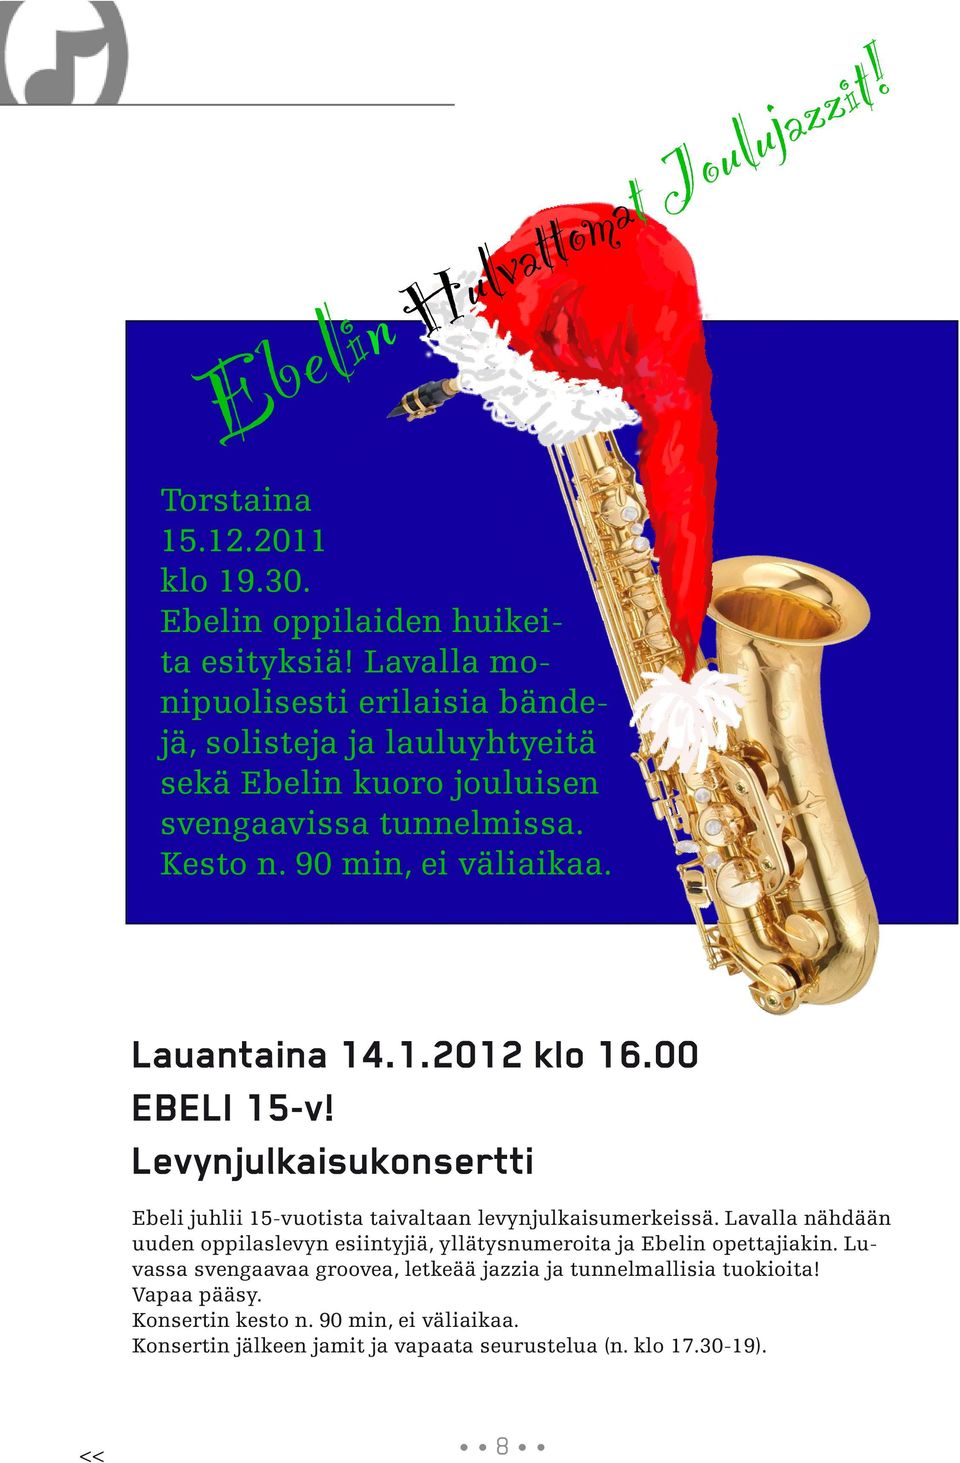 Lauantaina 14.1.2012 klo 16.00 EBELI 15-v! Levynjulkaisukonsertti Ebeli juhlii 15-vuotista taivaltaan levynjulkaisumerkeissä.